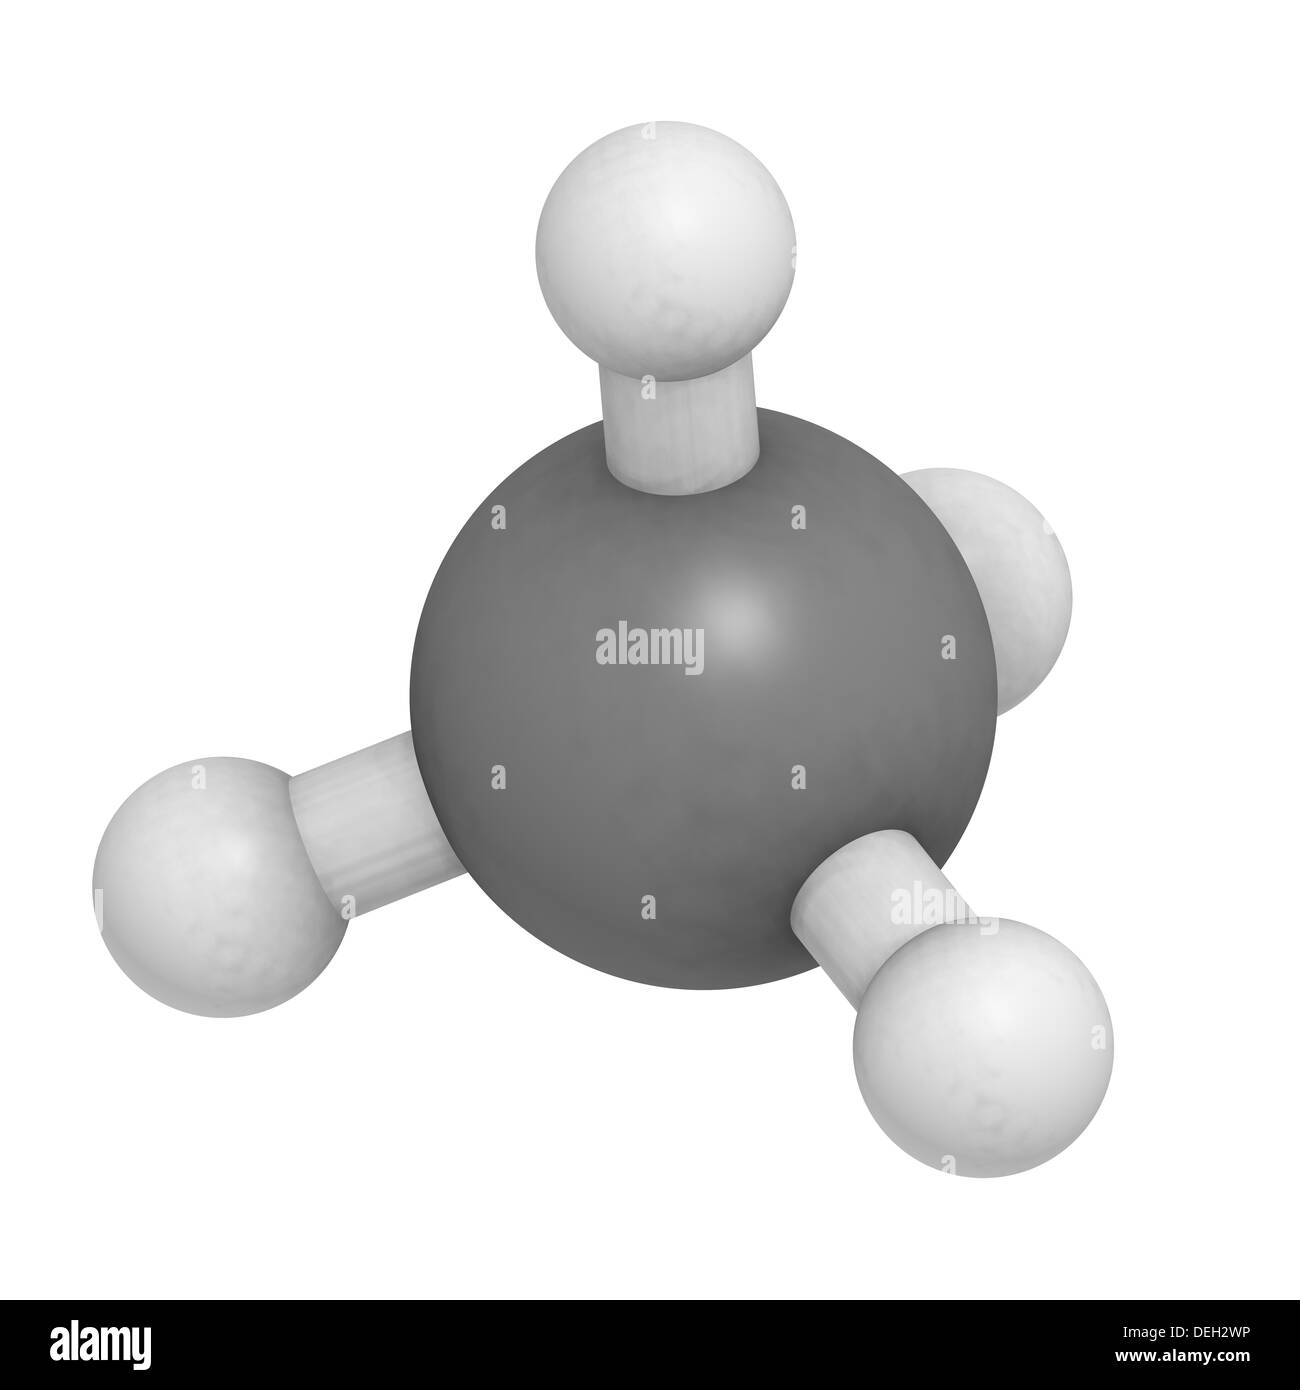 Methan (CH4) Gas Molekül, chemische Struktur. Hauptbestandteil von Erdgas.  Atome werden als Kugeln dargestellt Stockfotografie - Alamy